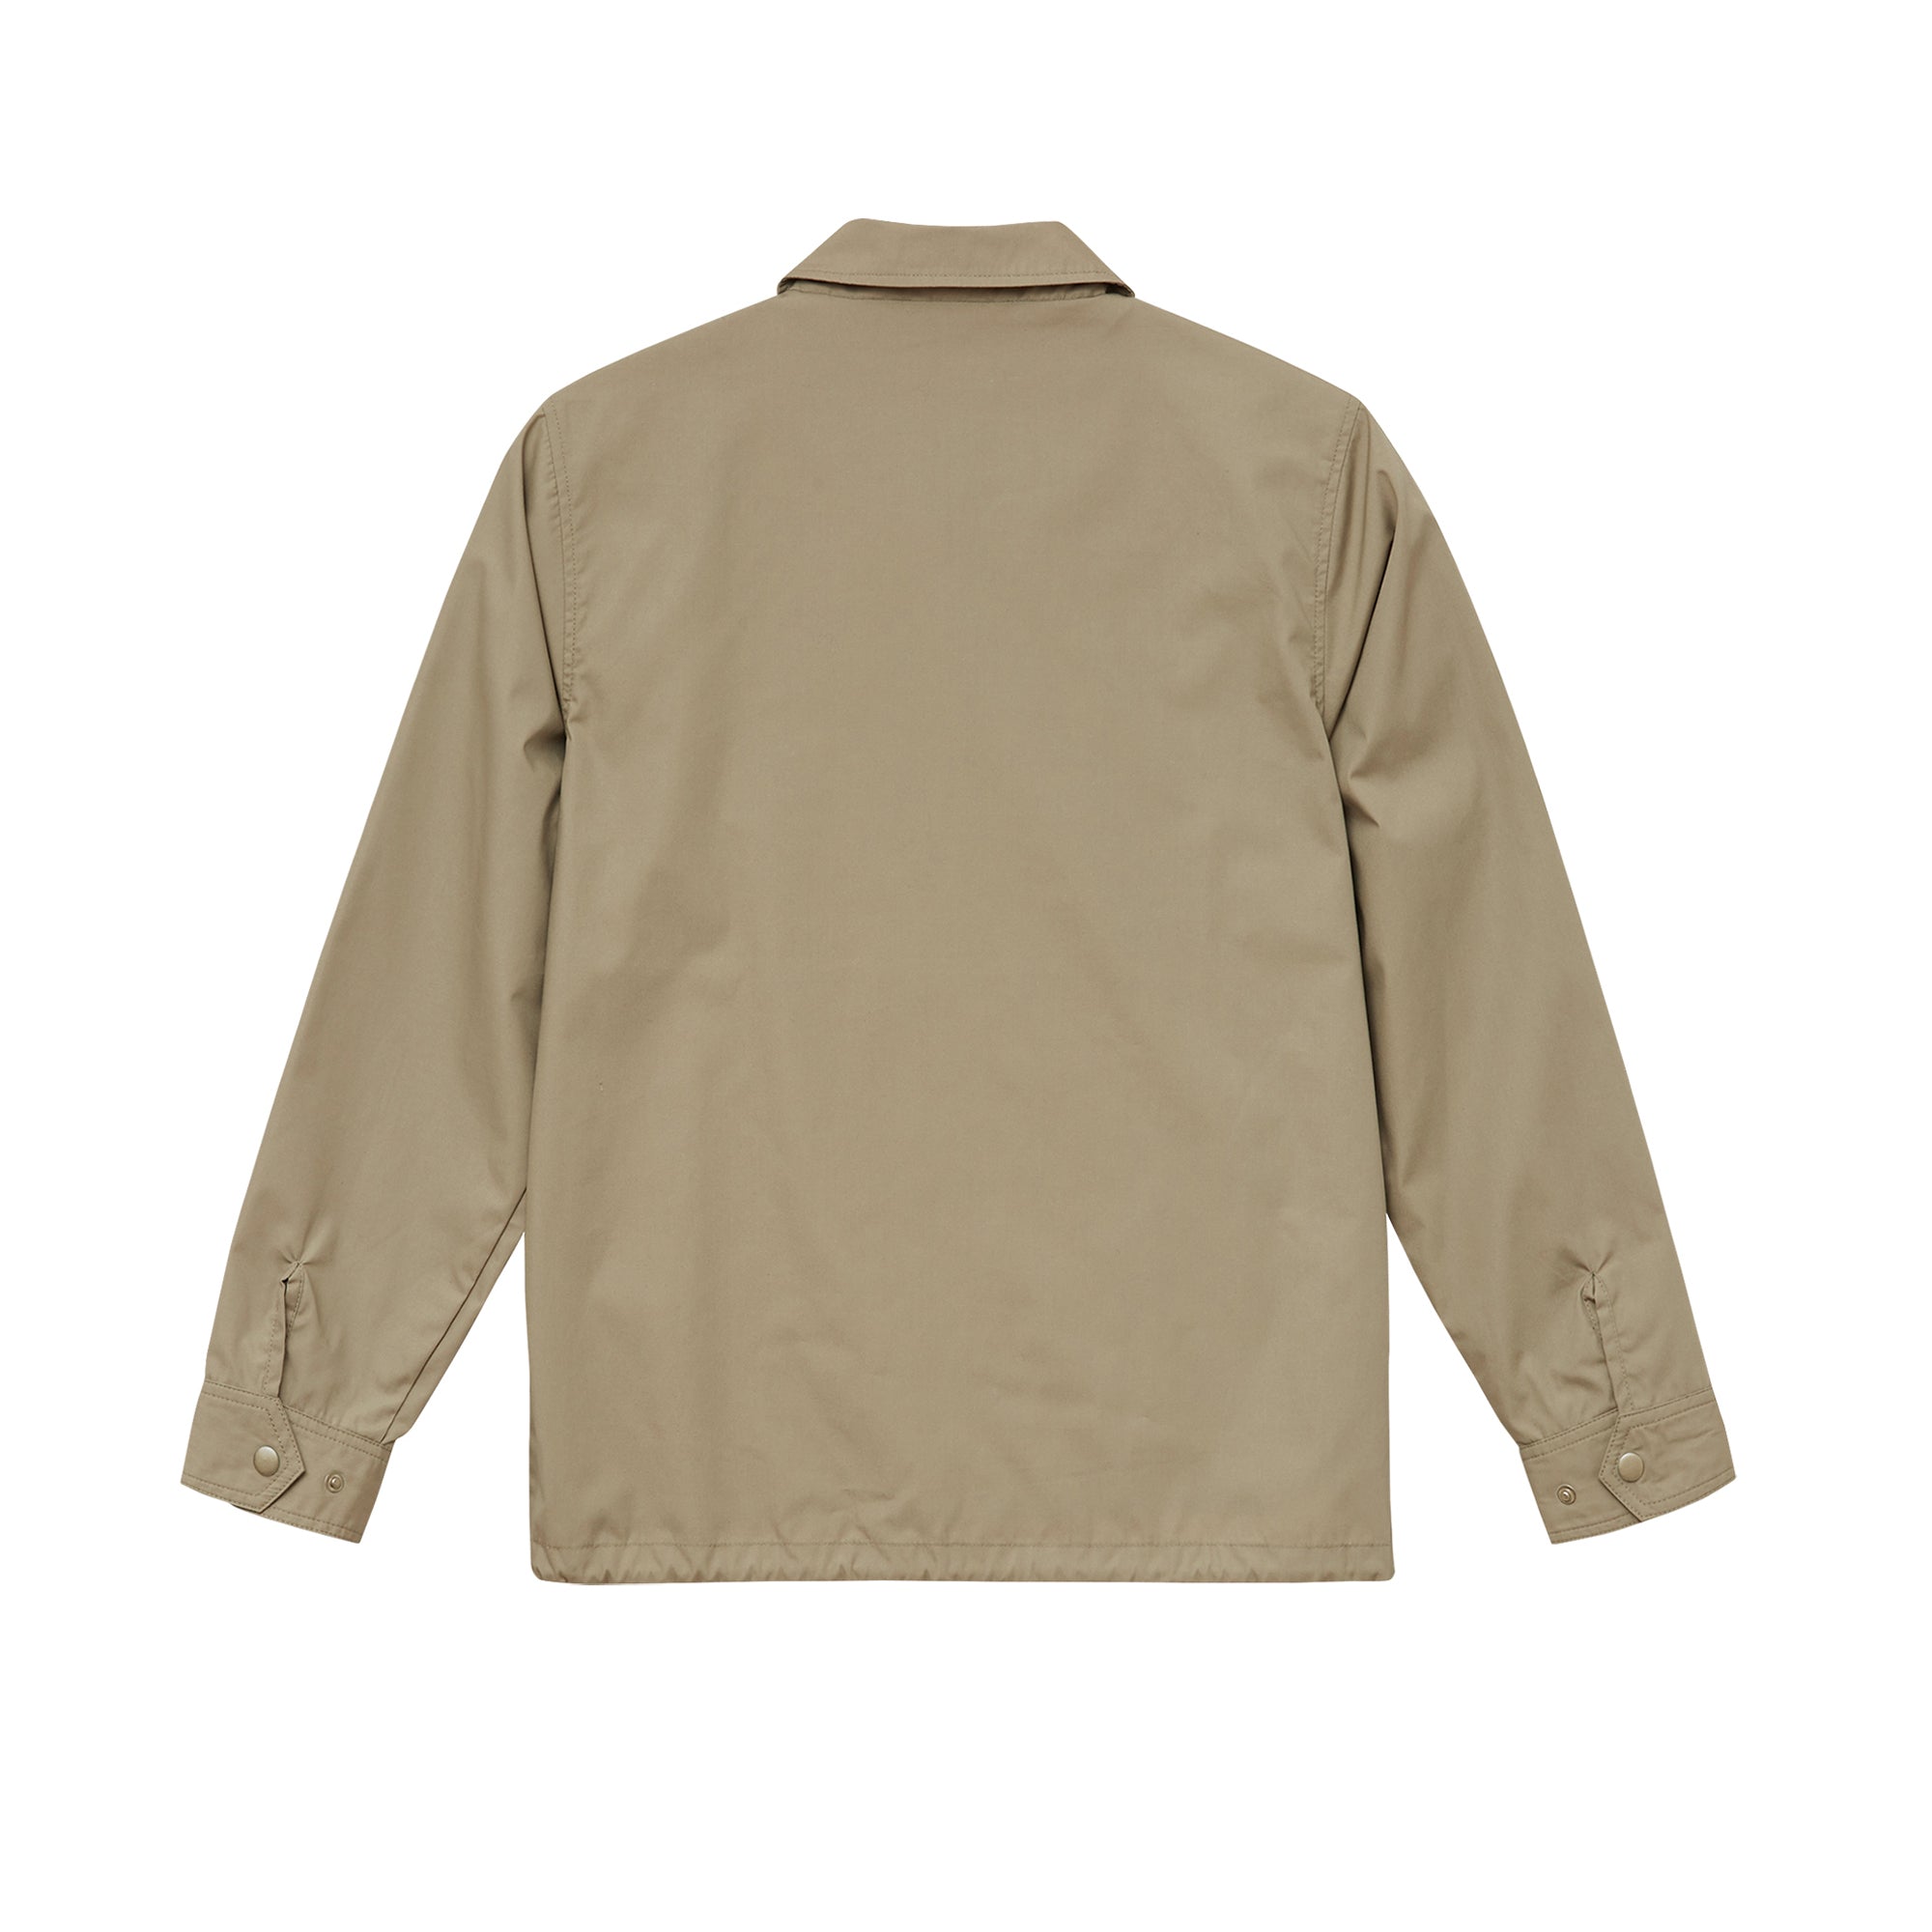 7448 - Lined Coach jacket (water repellent) - Beige x 2